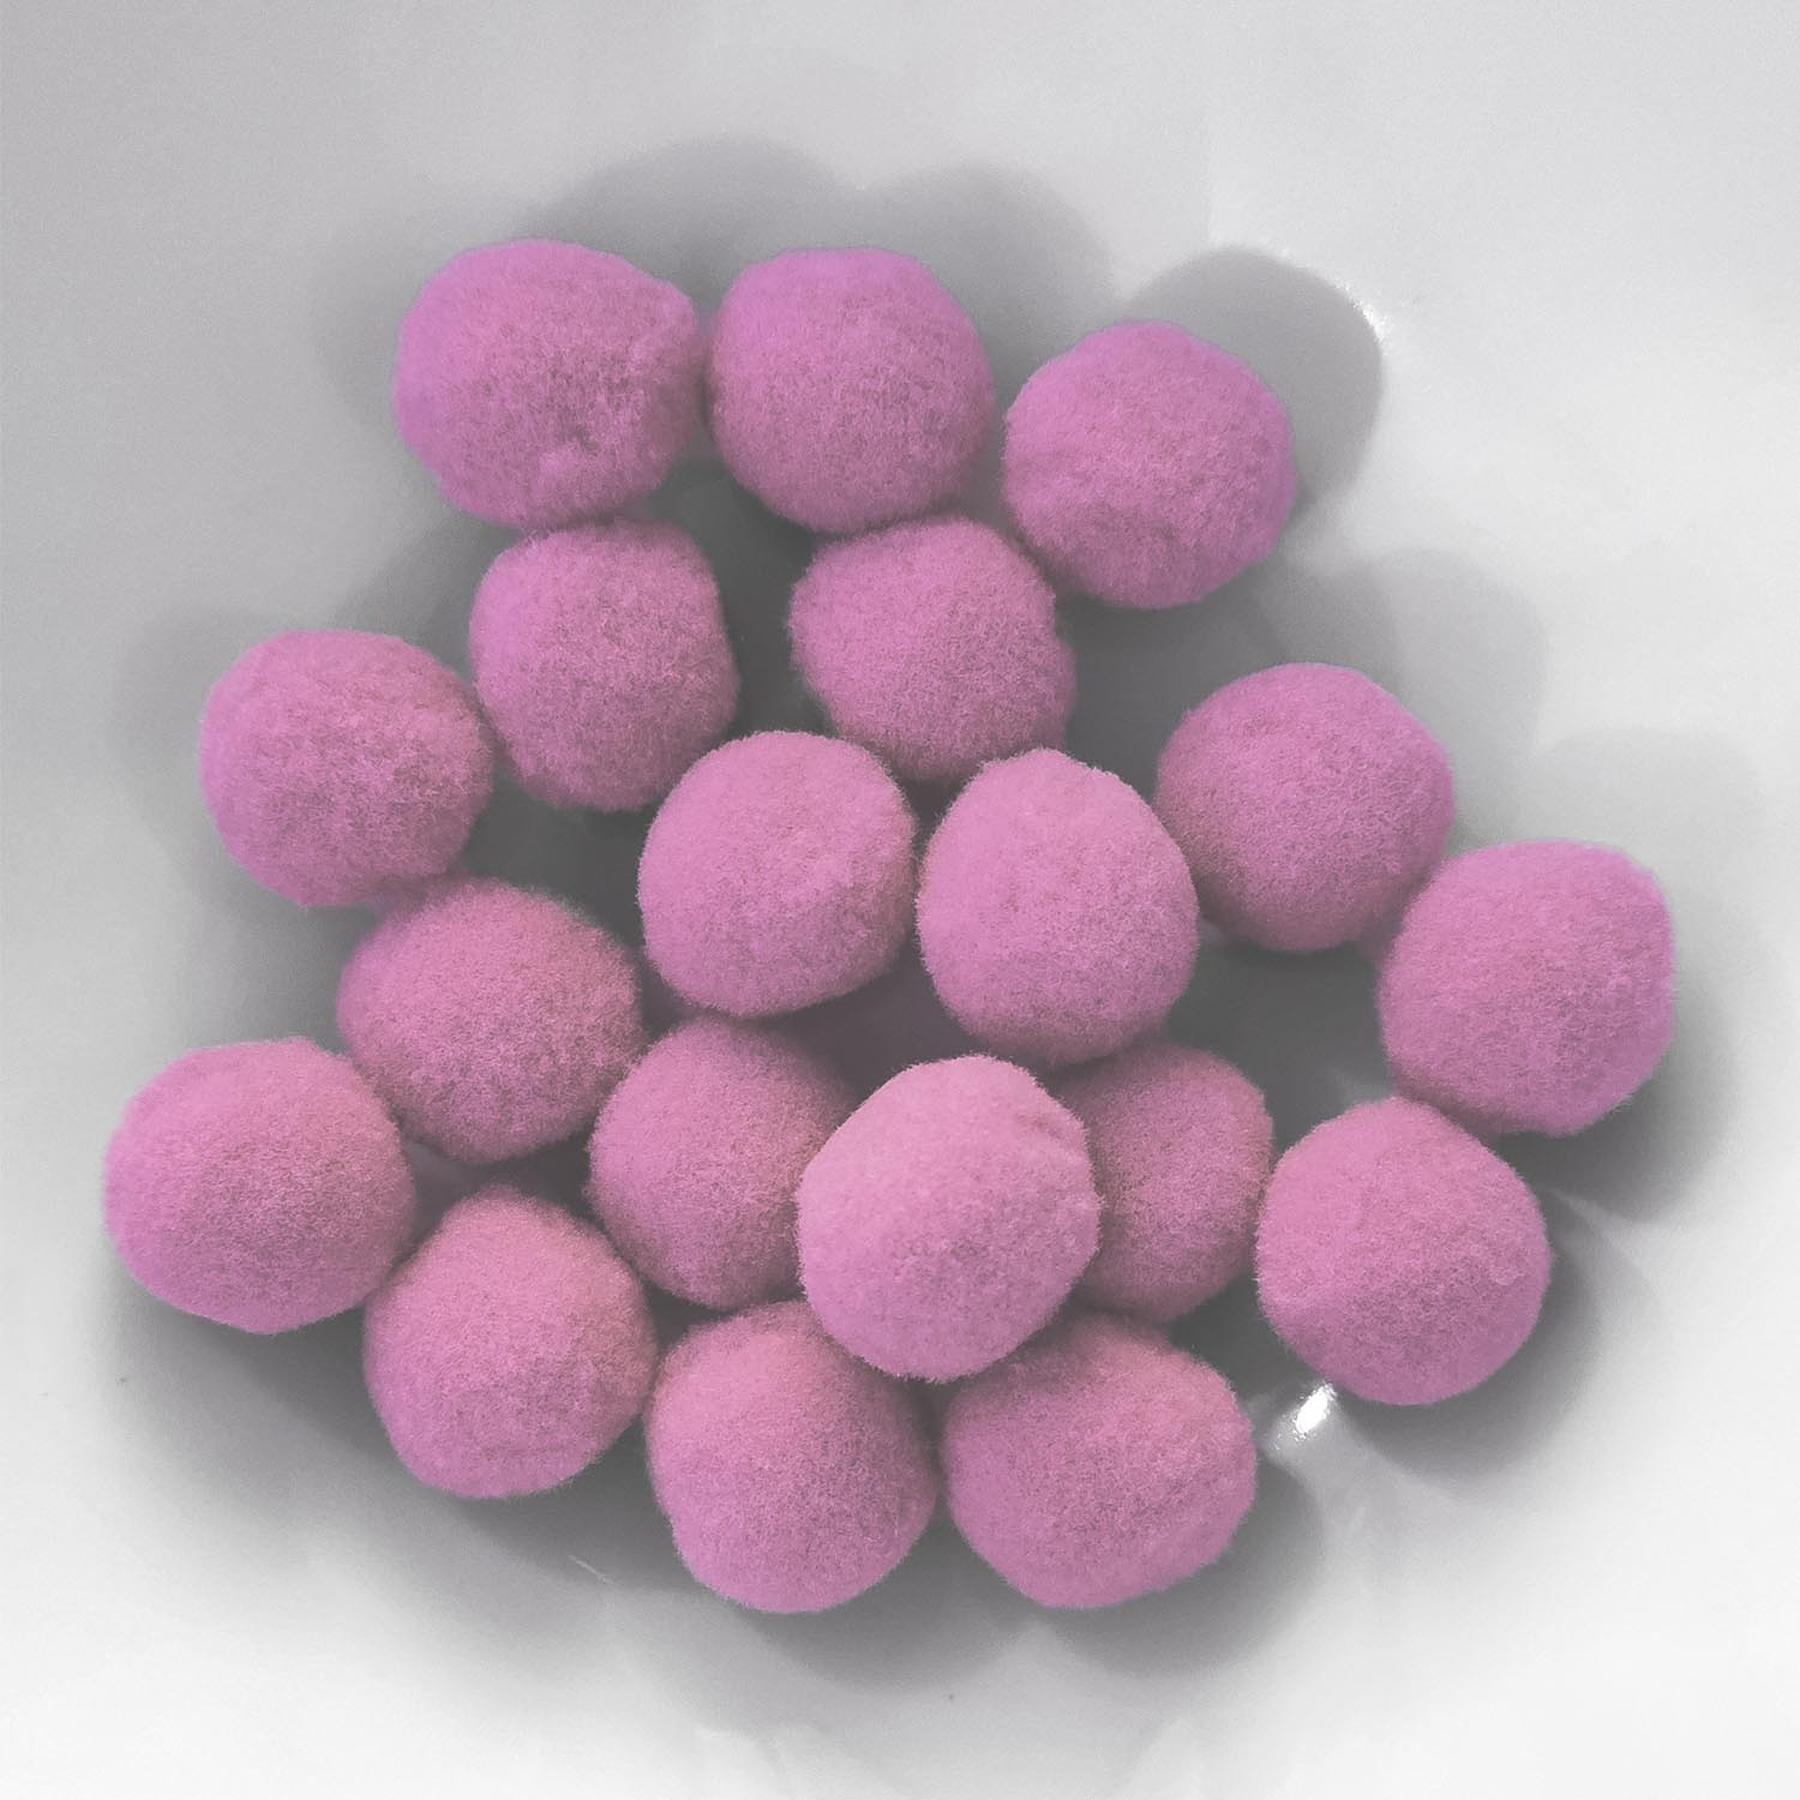 PomPon / Bälle aus Baumwolle - 10 mm / 50er Set - Rosa